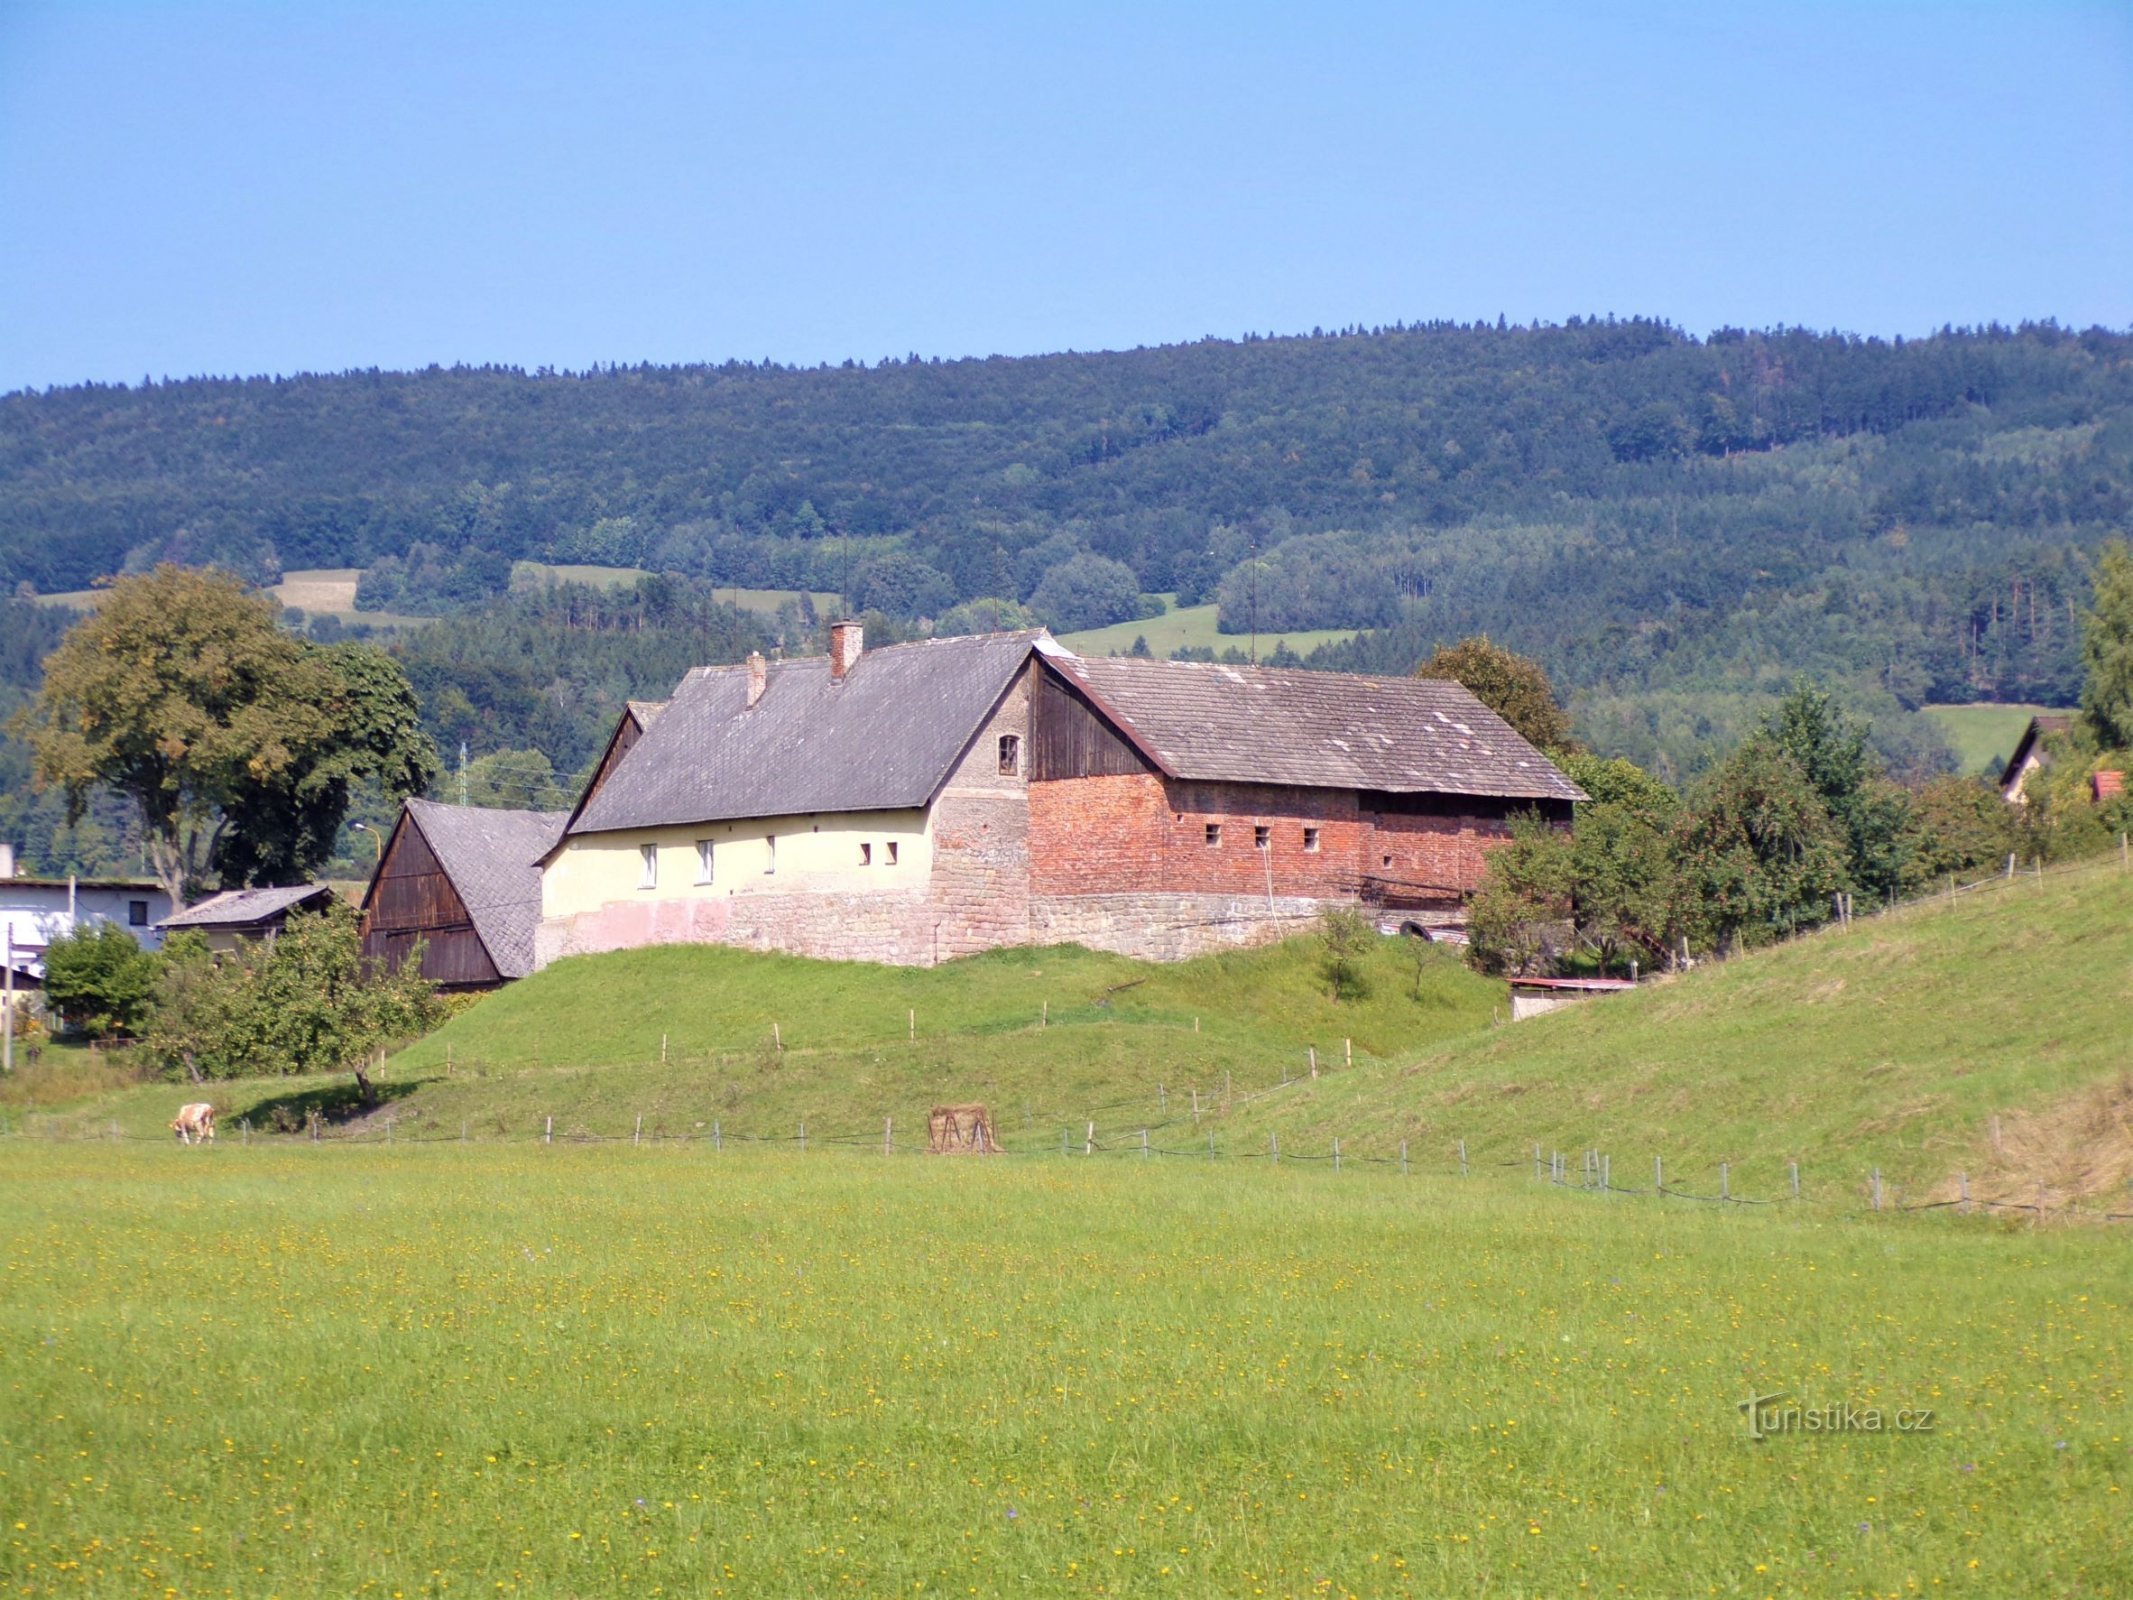 かつての要塞の跡地にあるエステート No. 242 (Velké Svatoňovice、6.9.2021 年 XNUMX 月 XNUMX 日)